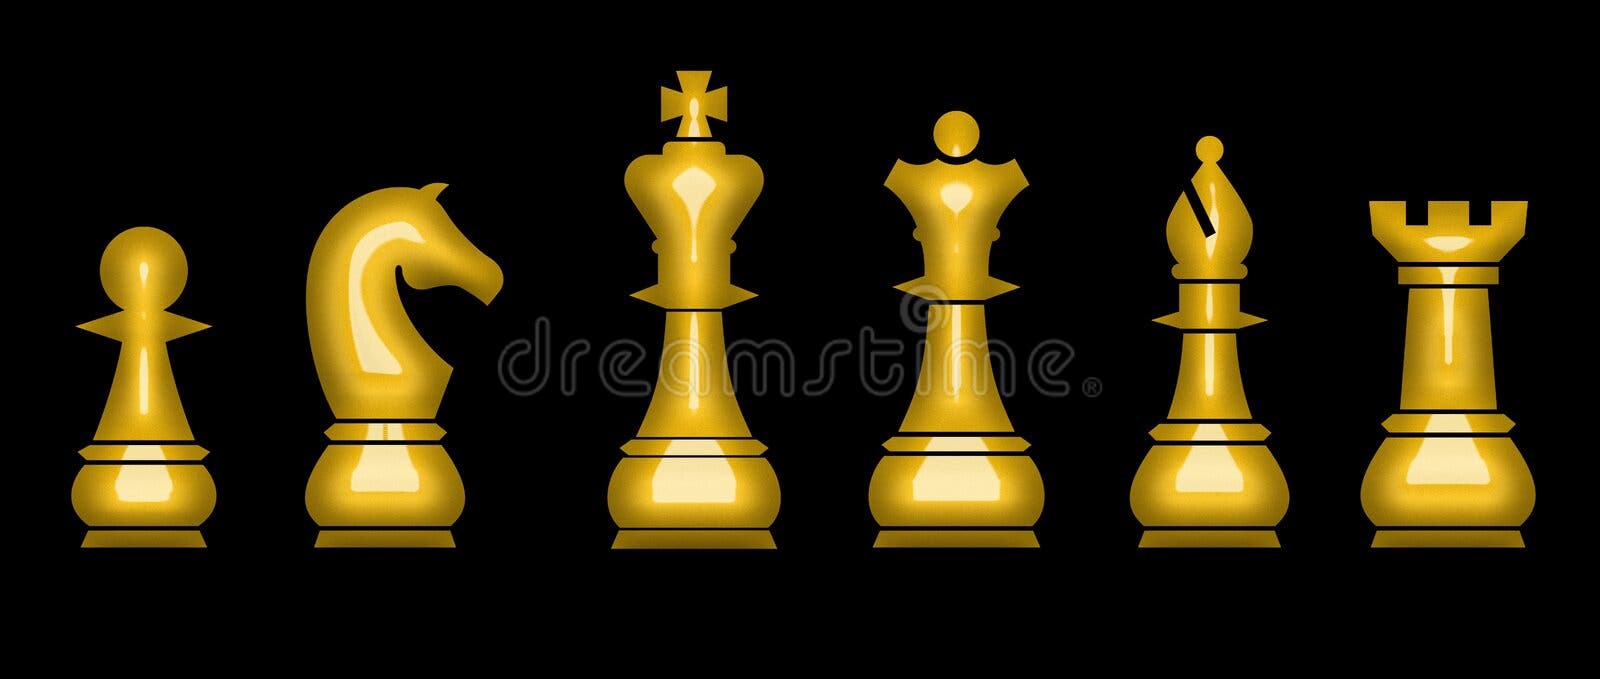 Xadrez, rei dourado ilustração stock. Ilustração de placa - 67982283